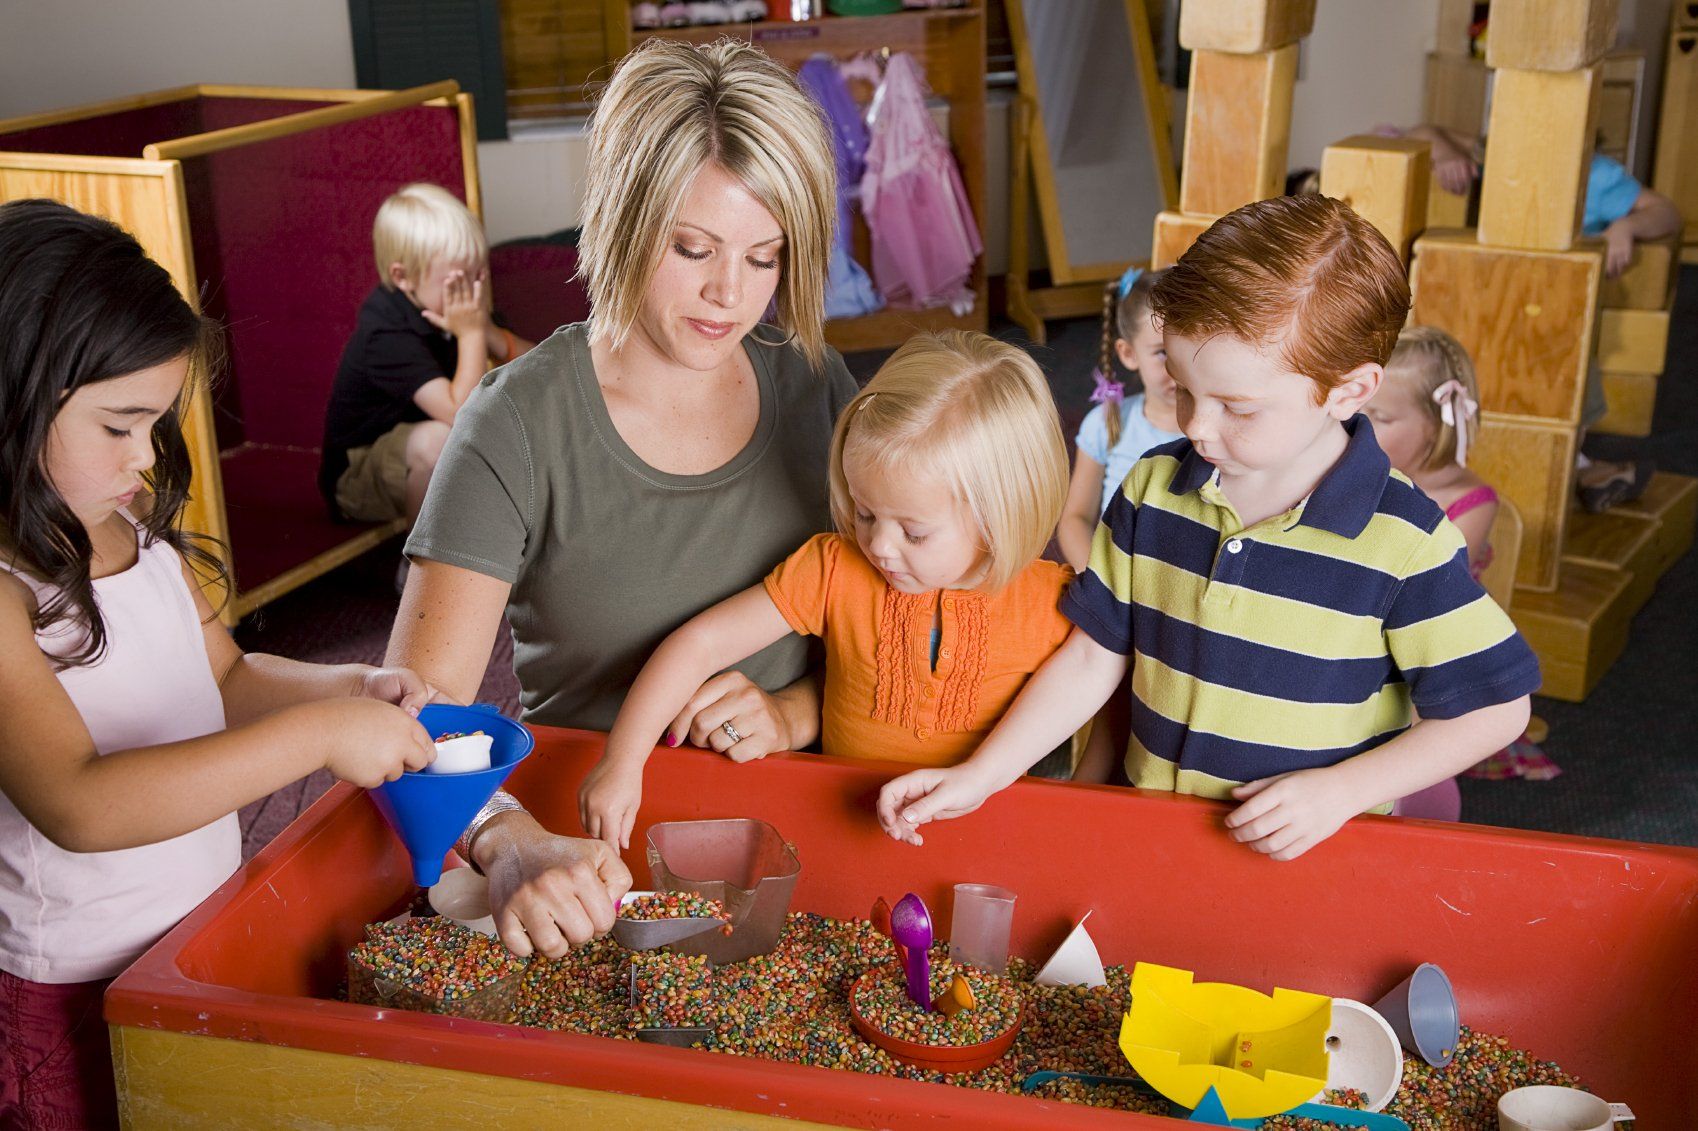 Игры с группой детей и родителей